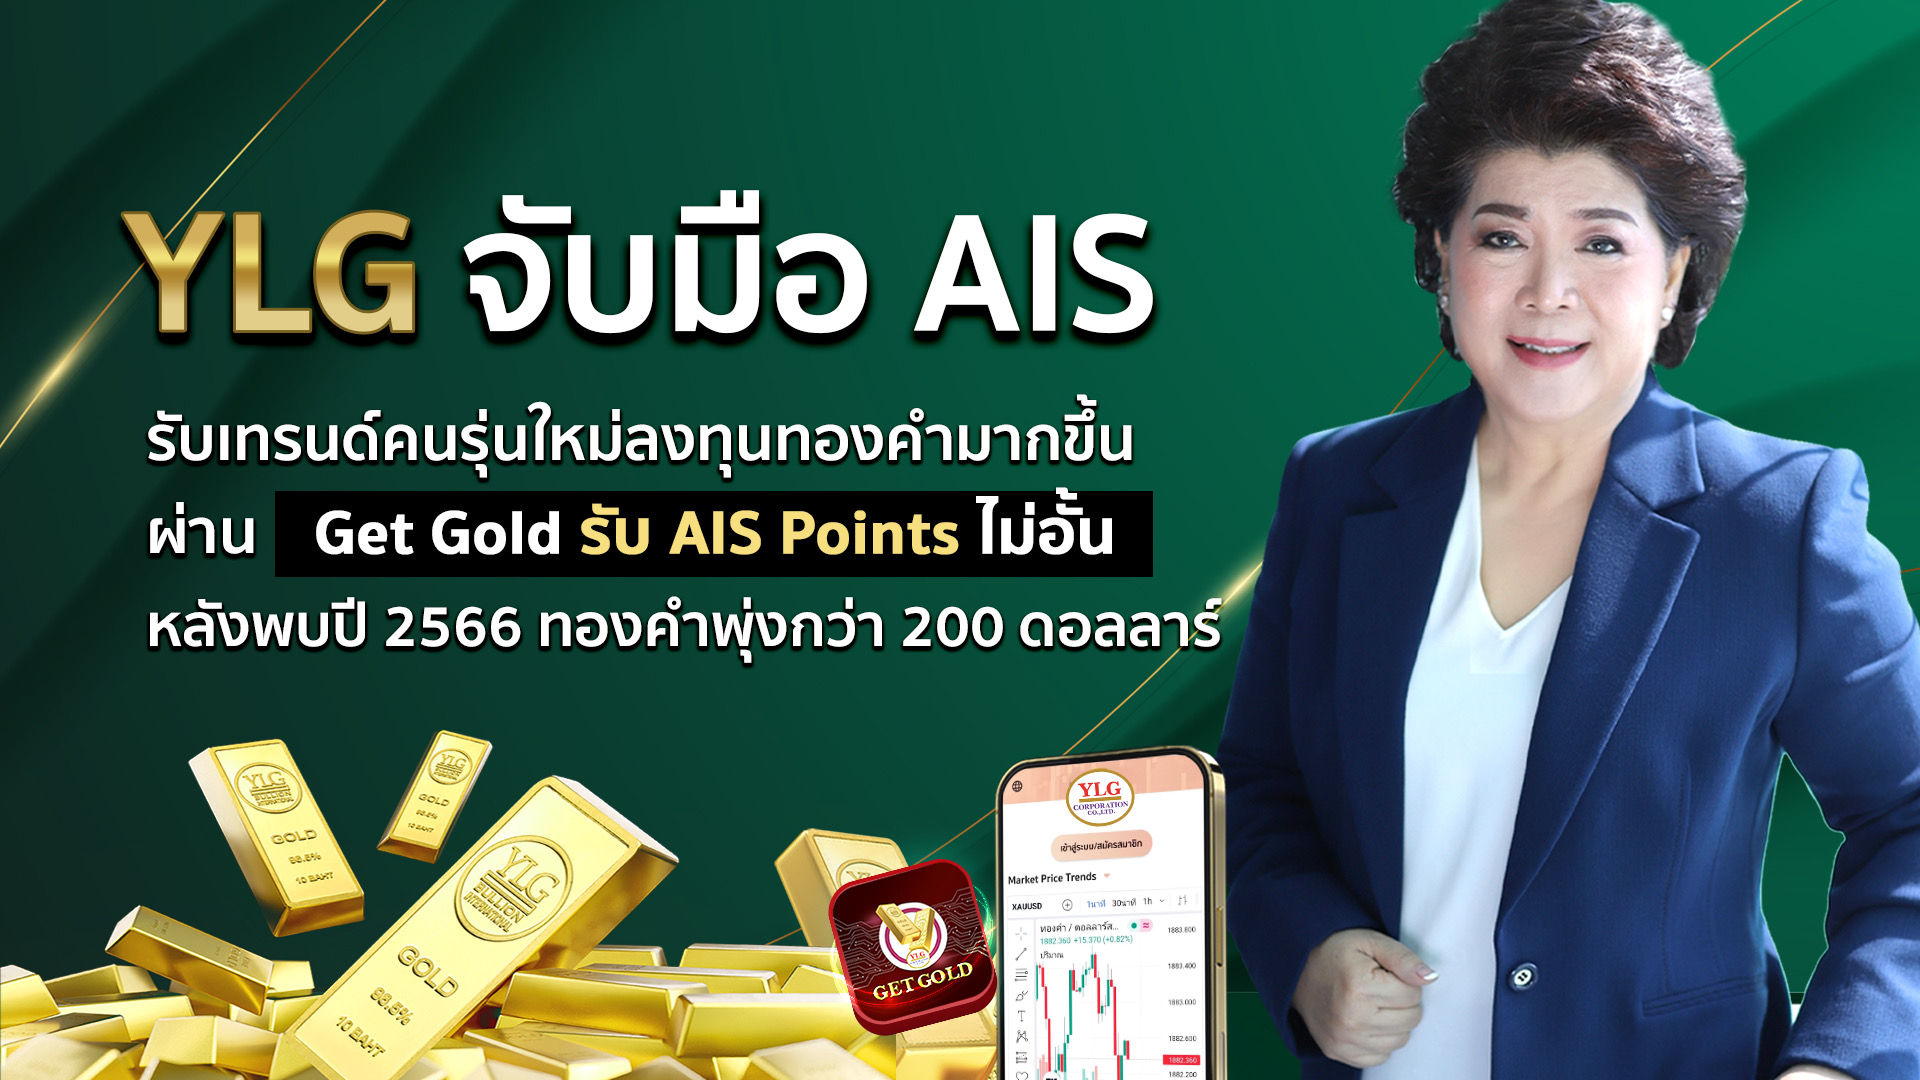 YLG จับมือ AIS เพิ่มโอกาสรายย่อยสะสมทองผ่าน Get Gold รับ AIS Points ไม่อั้น